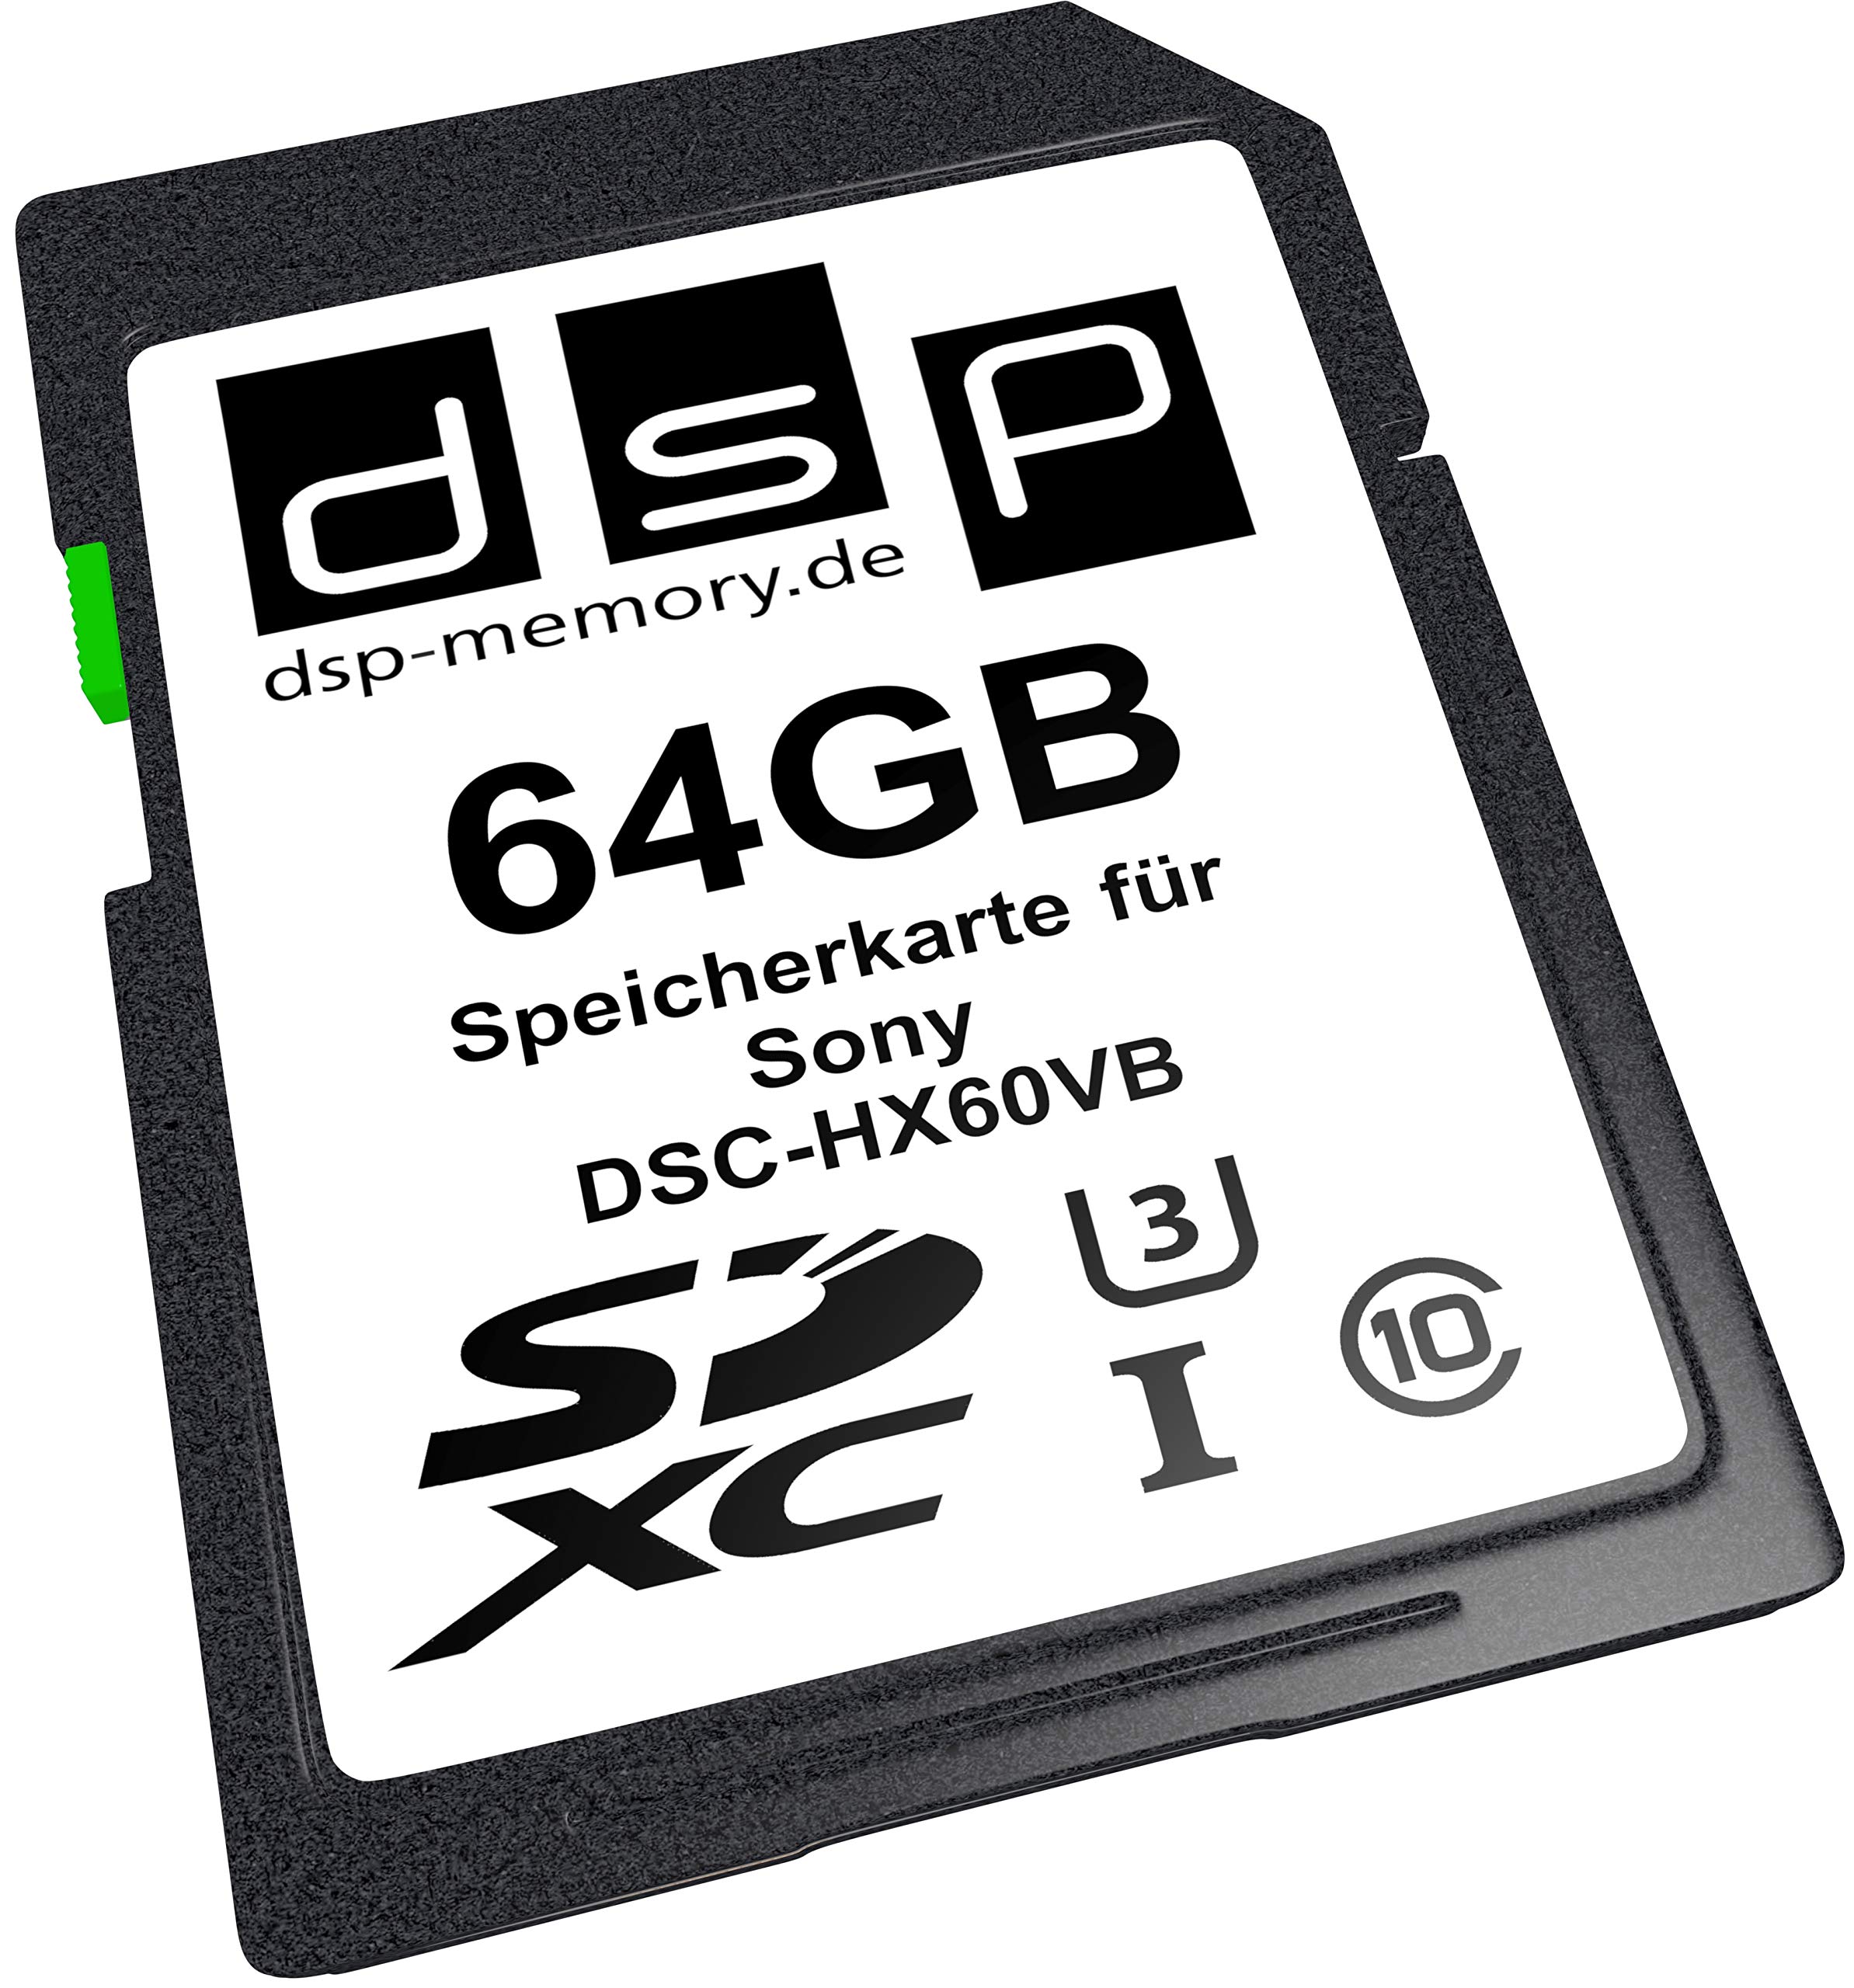 64GB Ultra Highspeed Speicherkarte für Sony DSC-HX60VB Digitalkamera